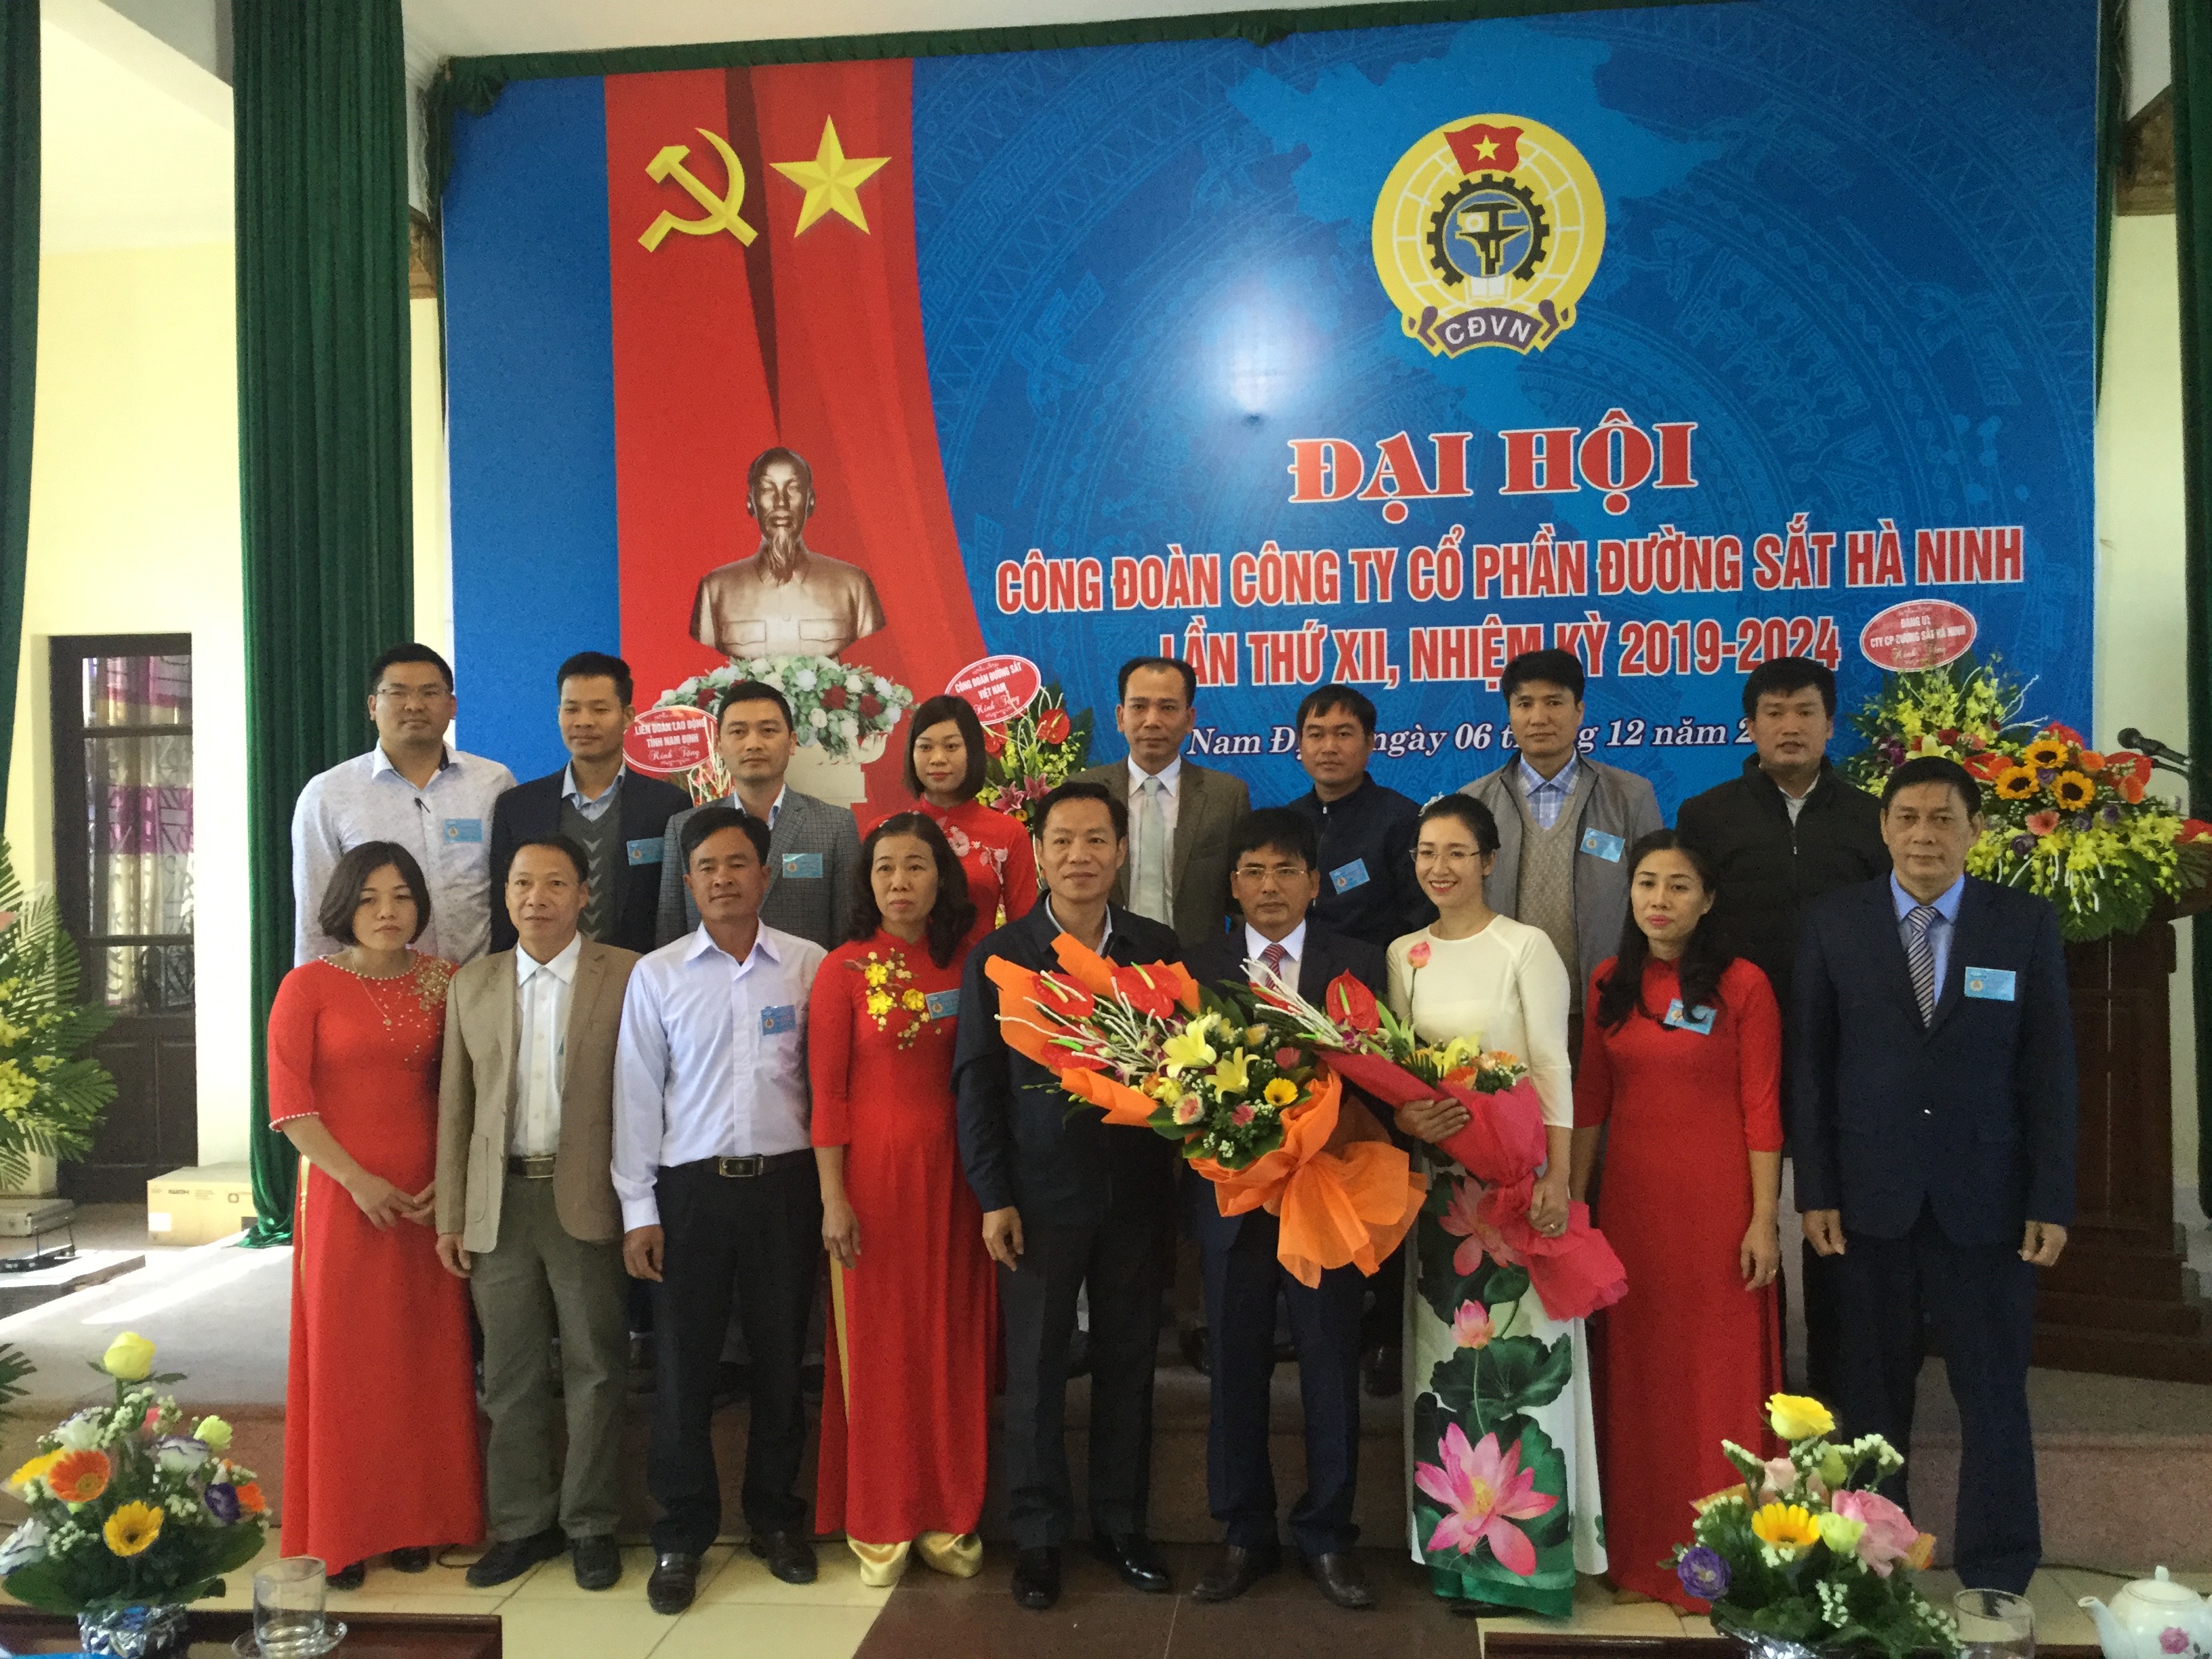 Công đoàn Công ty Cổ phần Đường sắt Hà Ninh  tổ chức Đại hội Công đoàn lần thứ XII, nhiệm kỳ 2019 - 2024